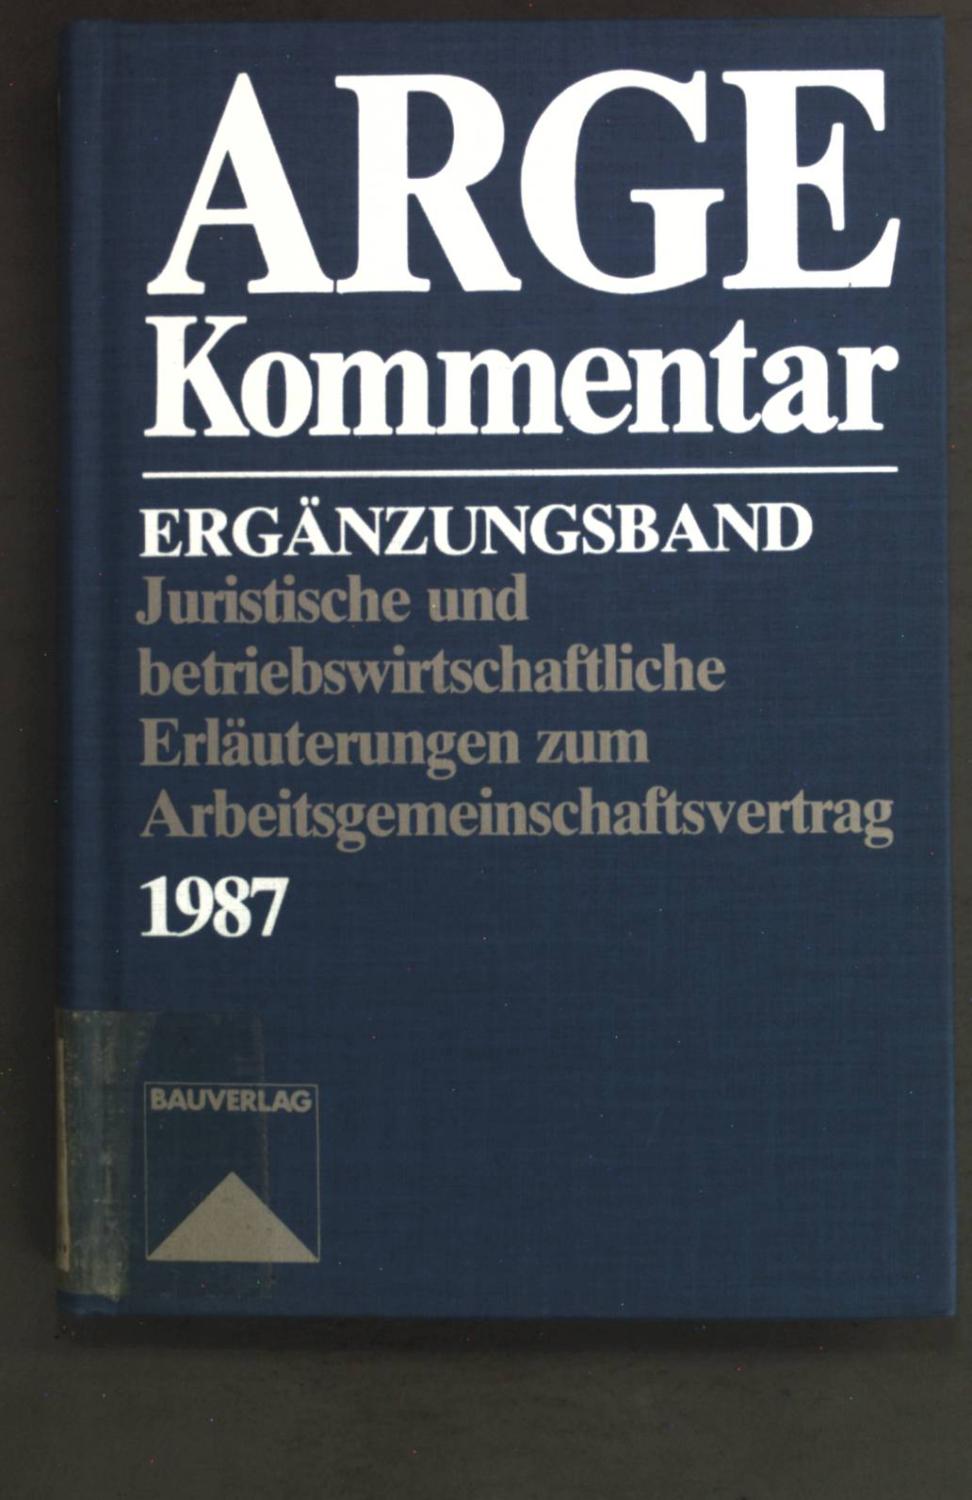 ARGE-Kommentar. Ergänzungsband. Juristische und betriebswirtschaftliche Erläuterungen zum Arbeitsgemeinschaftsvertrag, Fassung 1987.